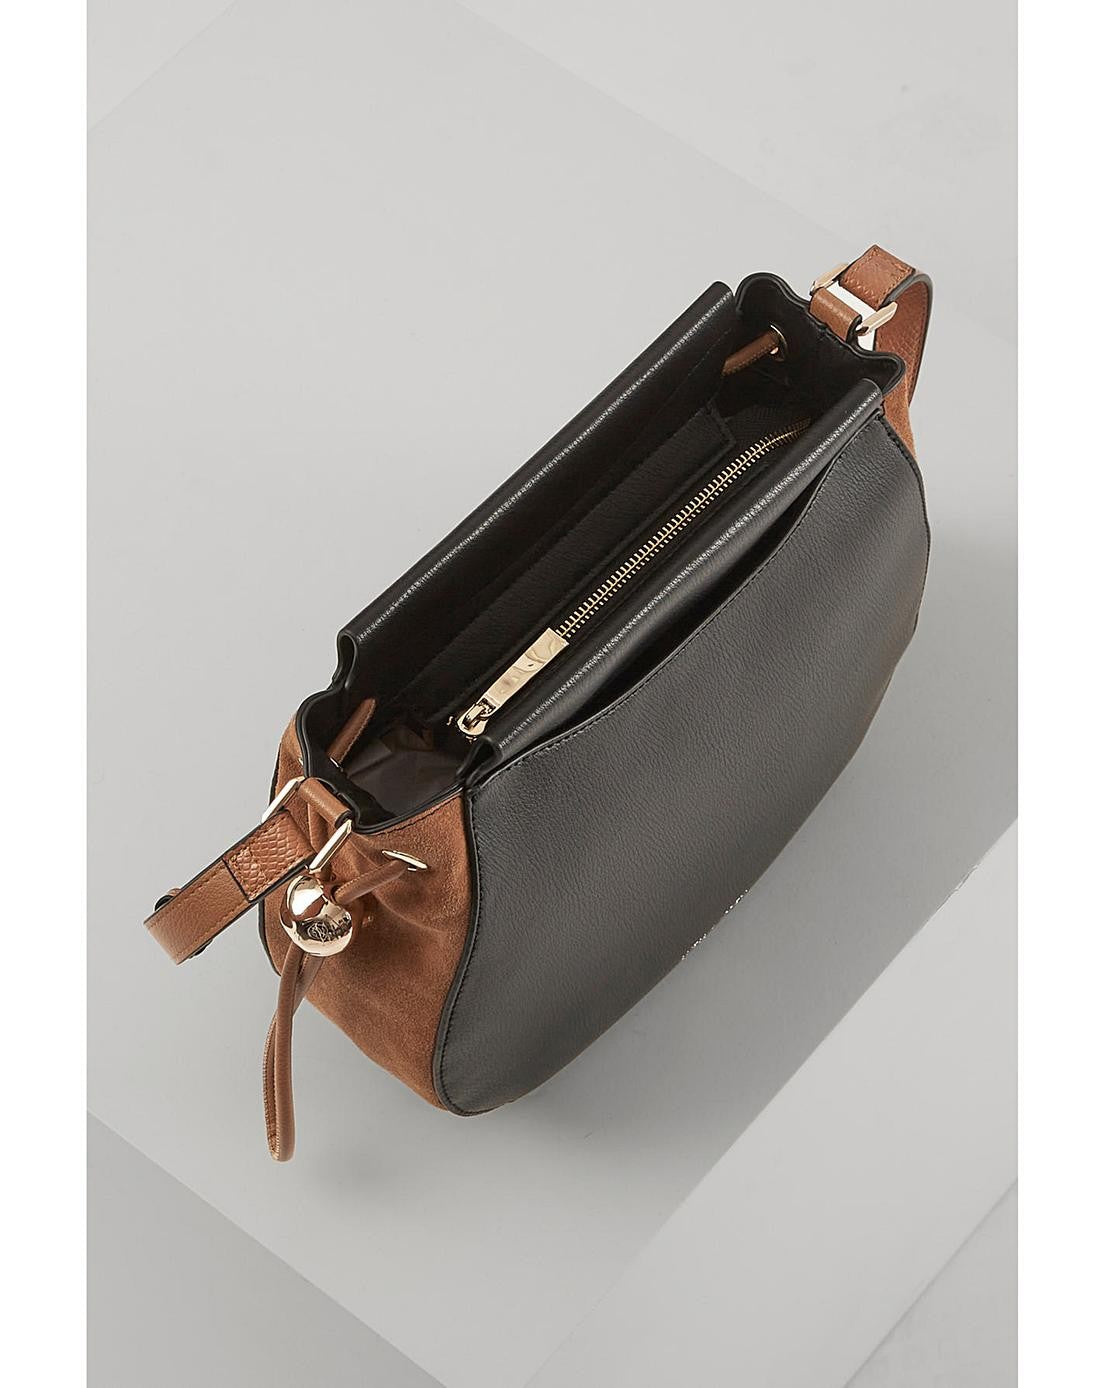 Luella Grey Black Cecily Bag